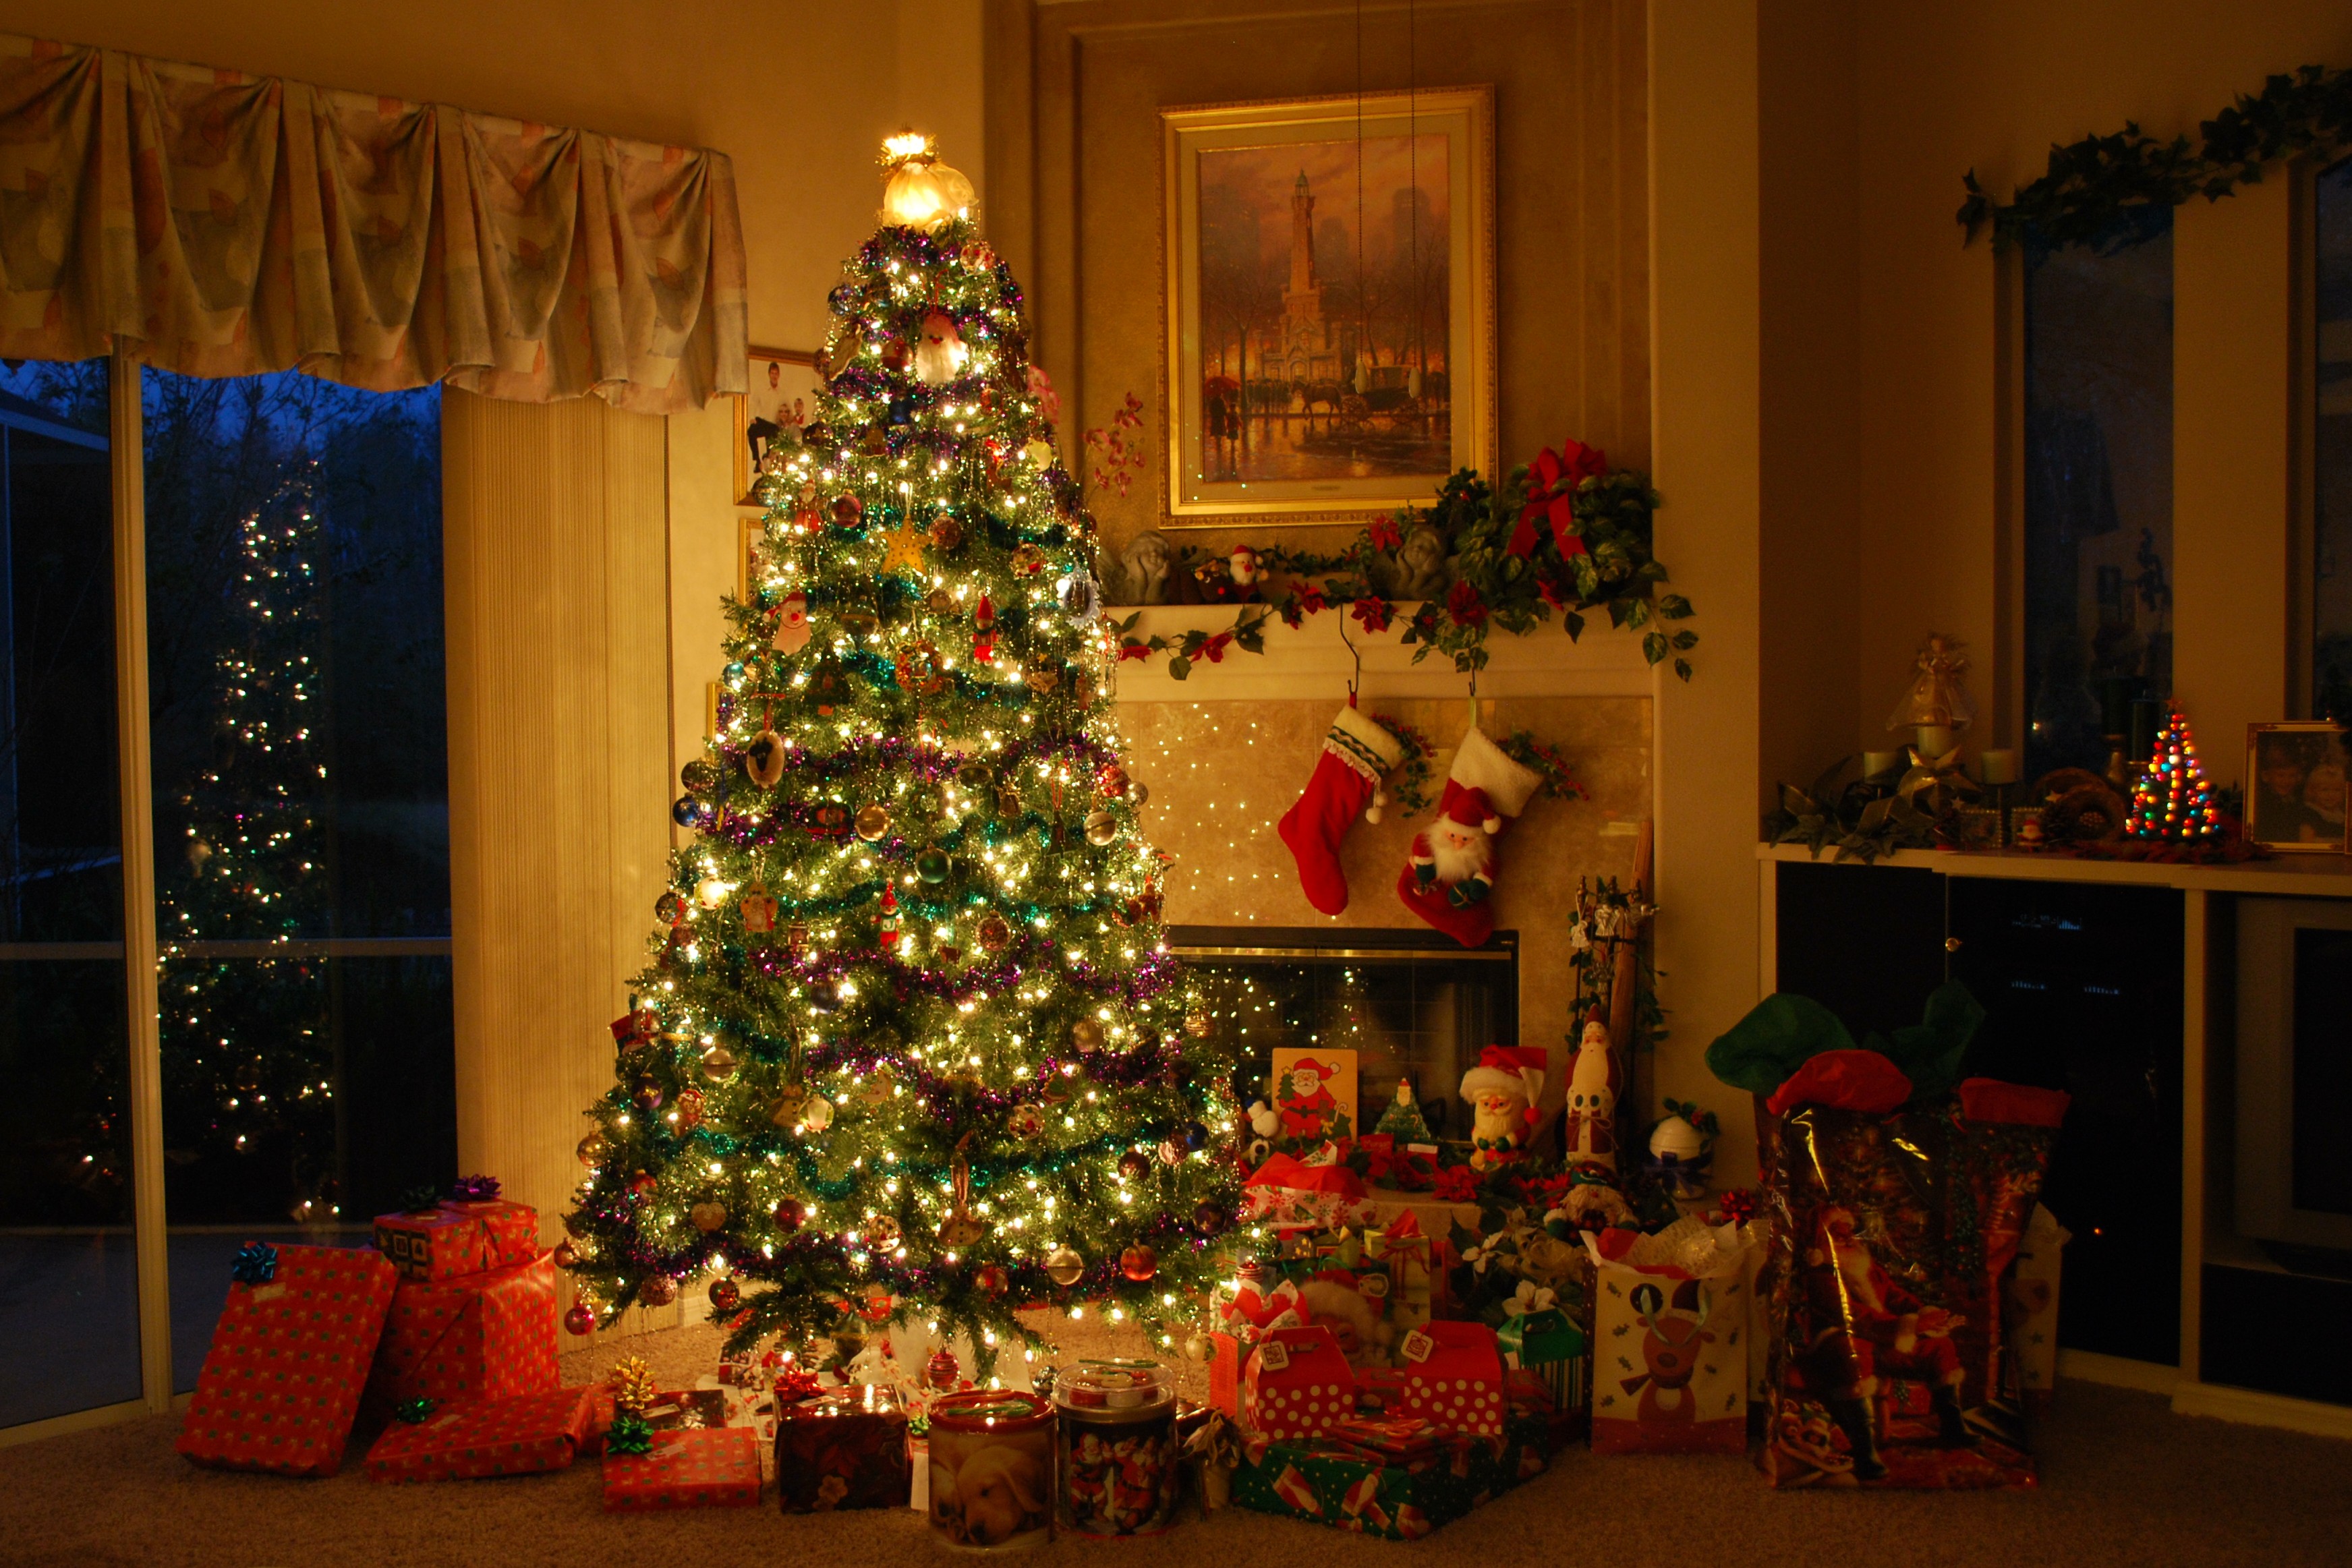 Inside Christmas Decorations - Home Design